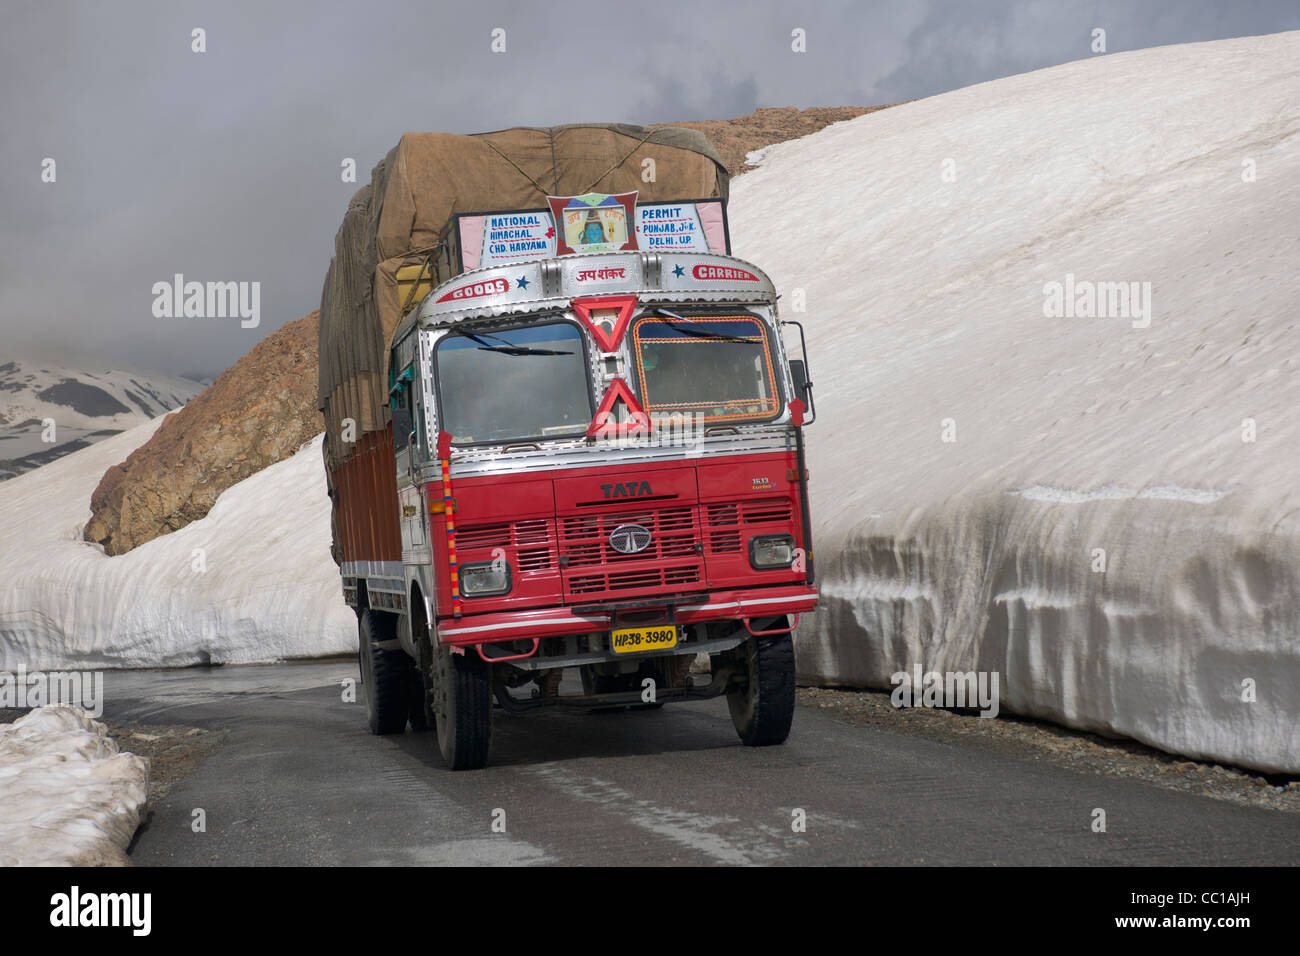 Tata Lkw vorbeifahren Schnee driftet durch den Straßenrand, Baralach La Pass Manali-Leh Highway, Himachal Pradesh, Indien Stockfoto